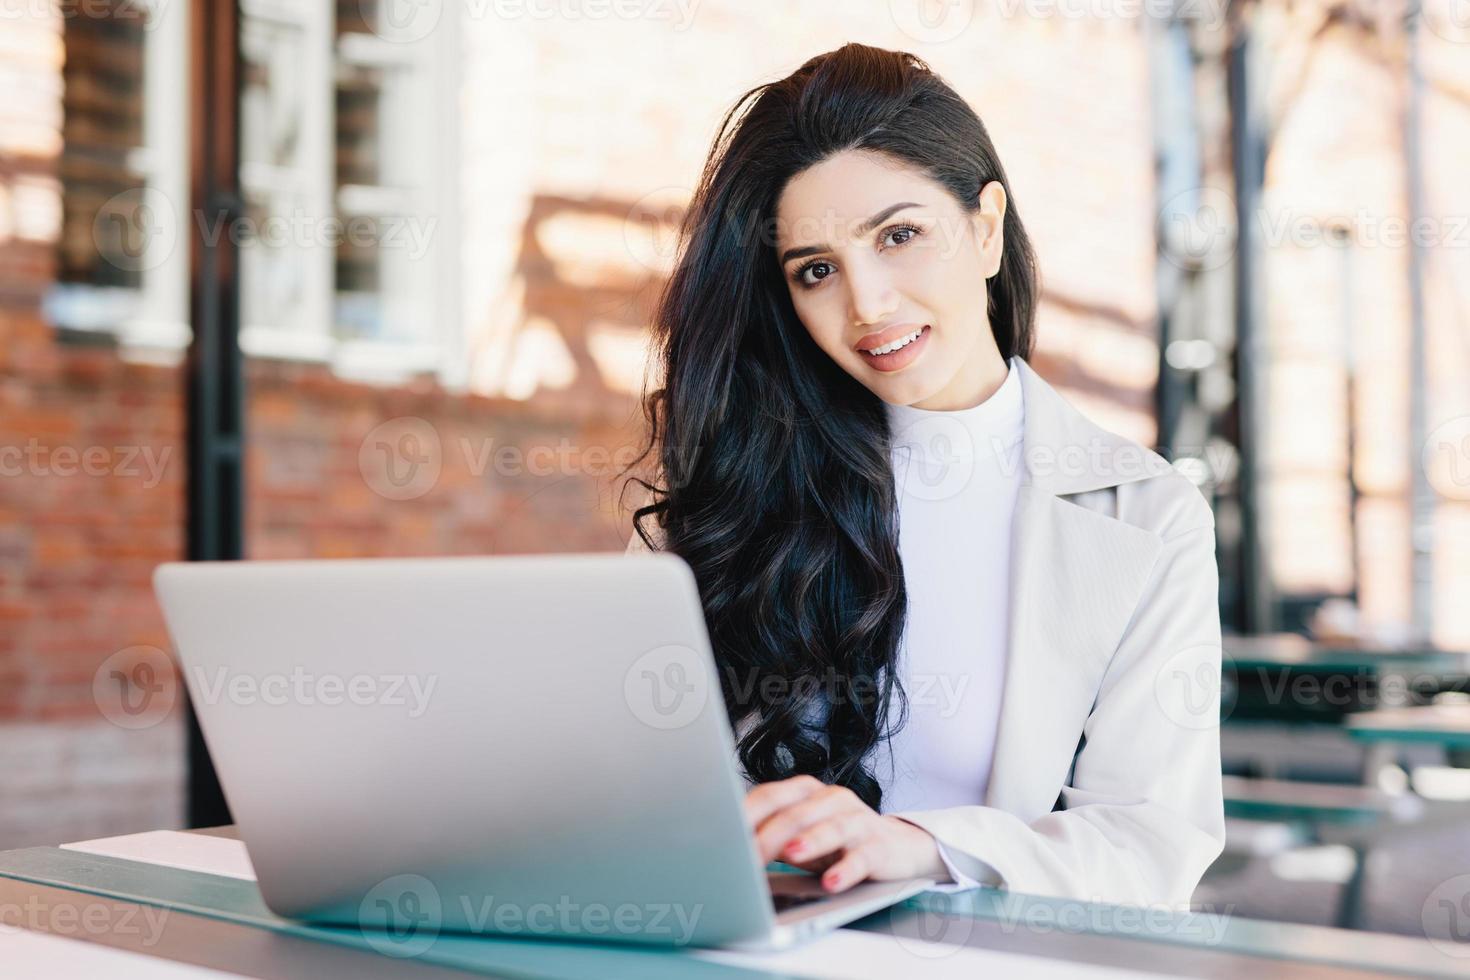 Technologie- und Kommunikationskonzept. erfolgreiche europäische geschäftsfrau mit schönem aussehen, das in einem café auf einem laptop arbeitet und einen lächelnden ausdruck hat, der in die kamera schaut, während er im freien sitzt foto